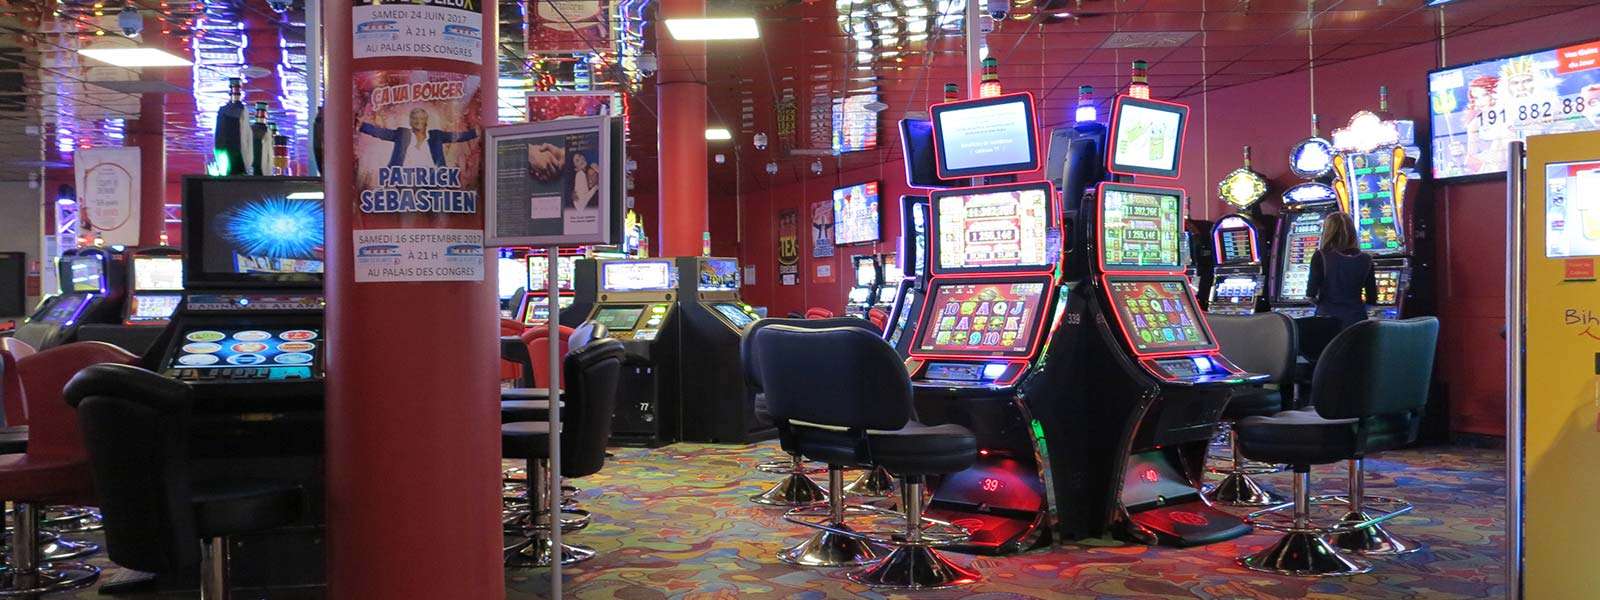 machines à sous-Casino-Jeux-Les Sables d'Olonne-Vendée-Pays de La Loire -France